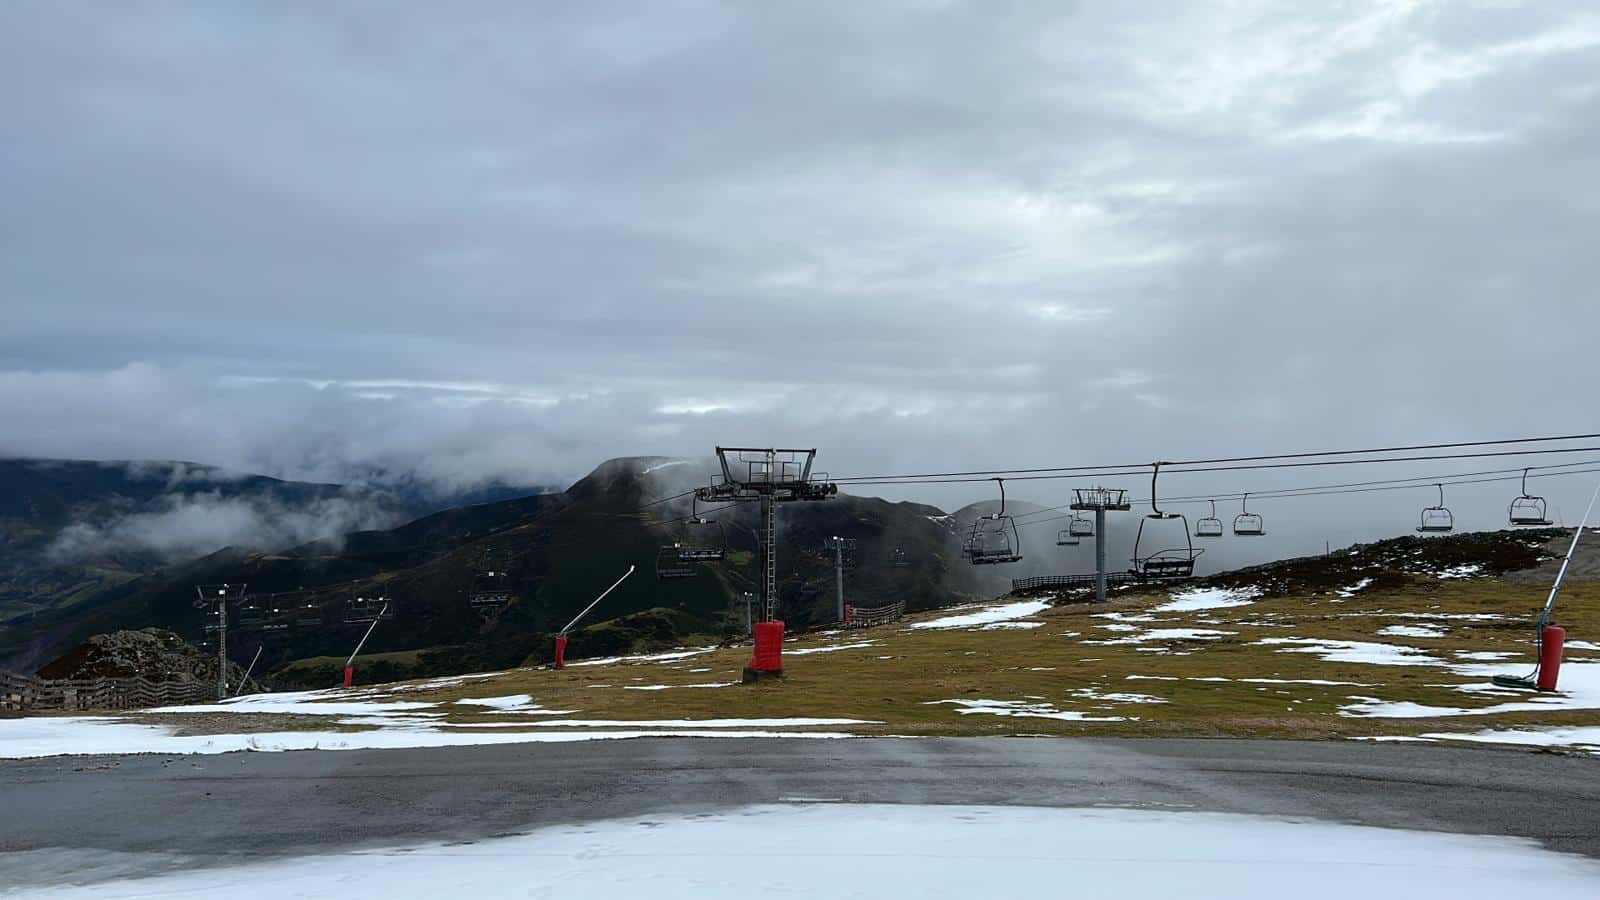 Webcam - Estación invernal Valgrande – Pajares: Panorámica motorizada